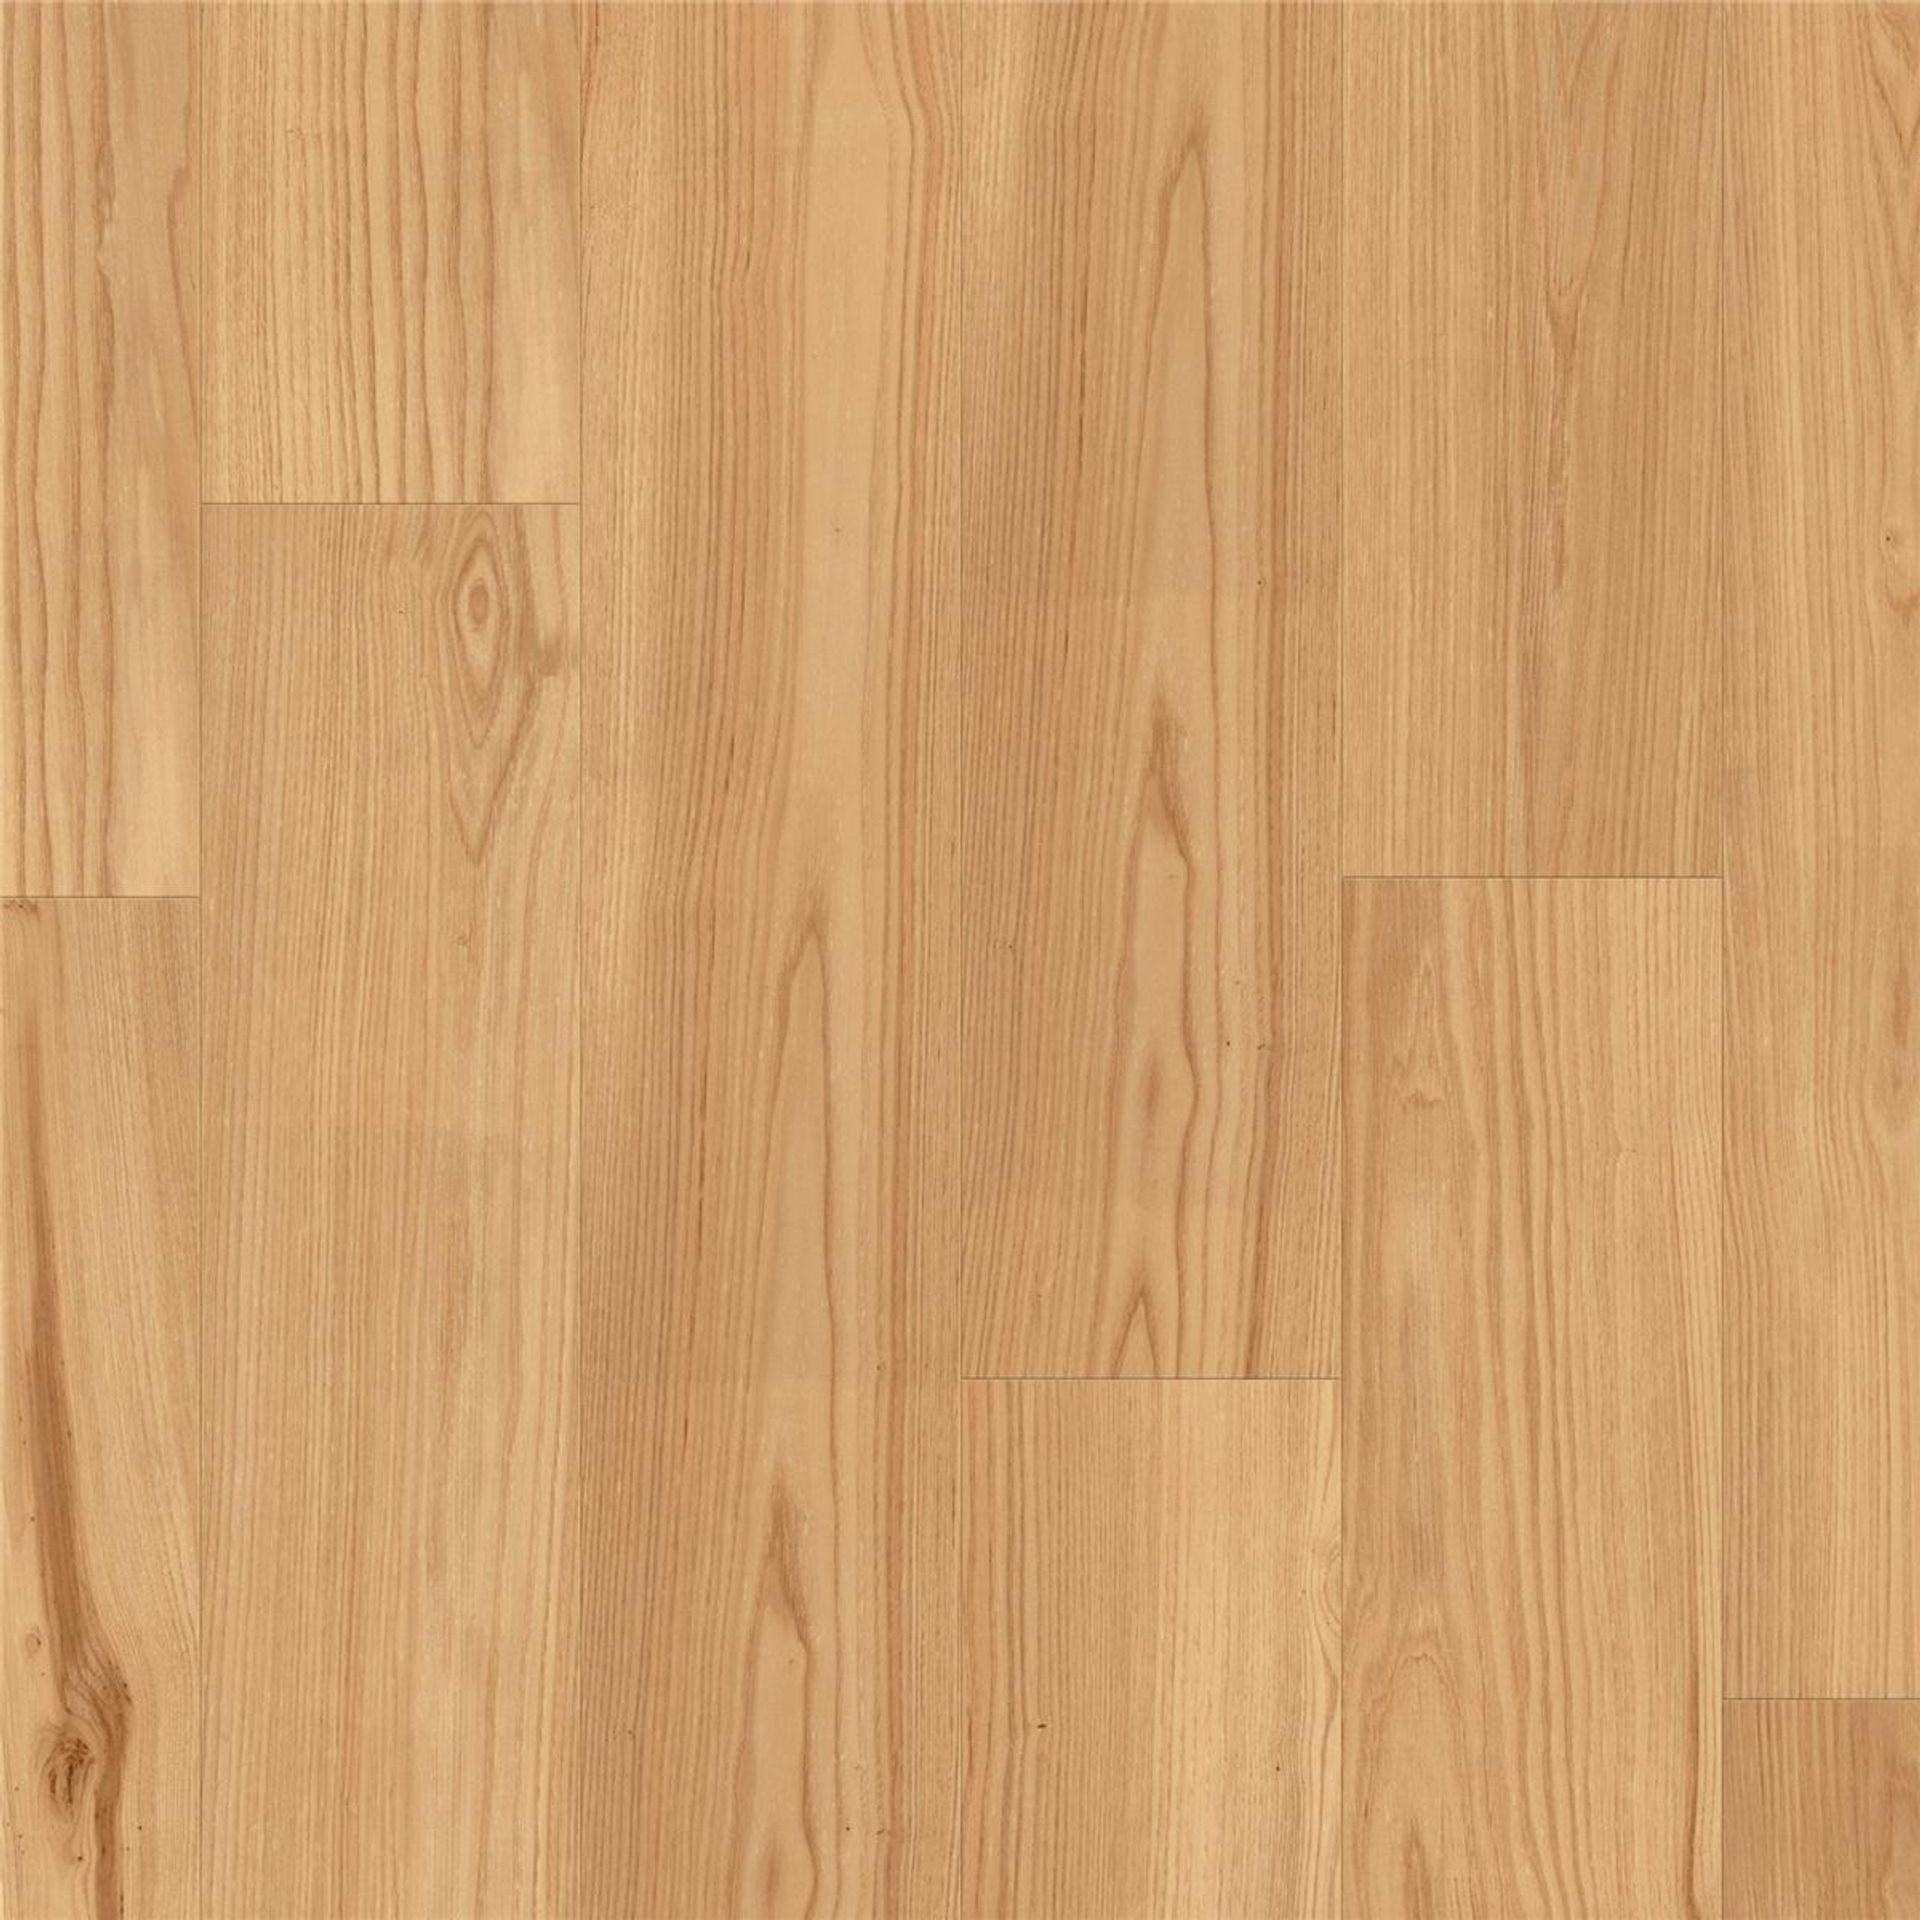 Designboden NATURALS-Chestnut-Original Planke 150 cm x 25 cm - Nutzschichtdicke 0,55 mm